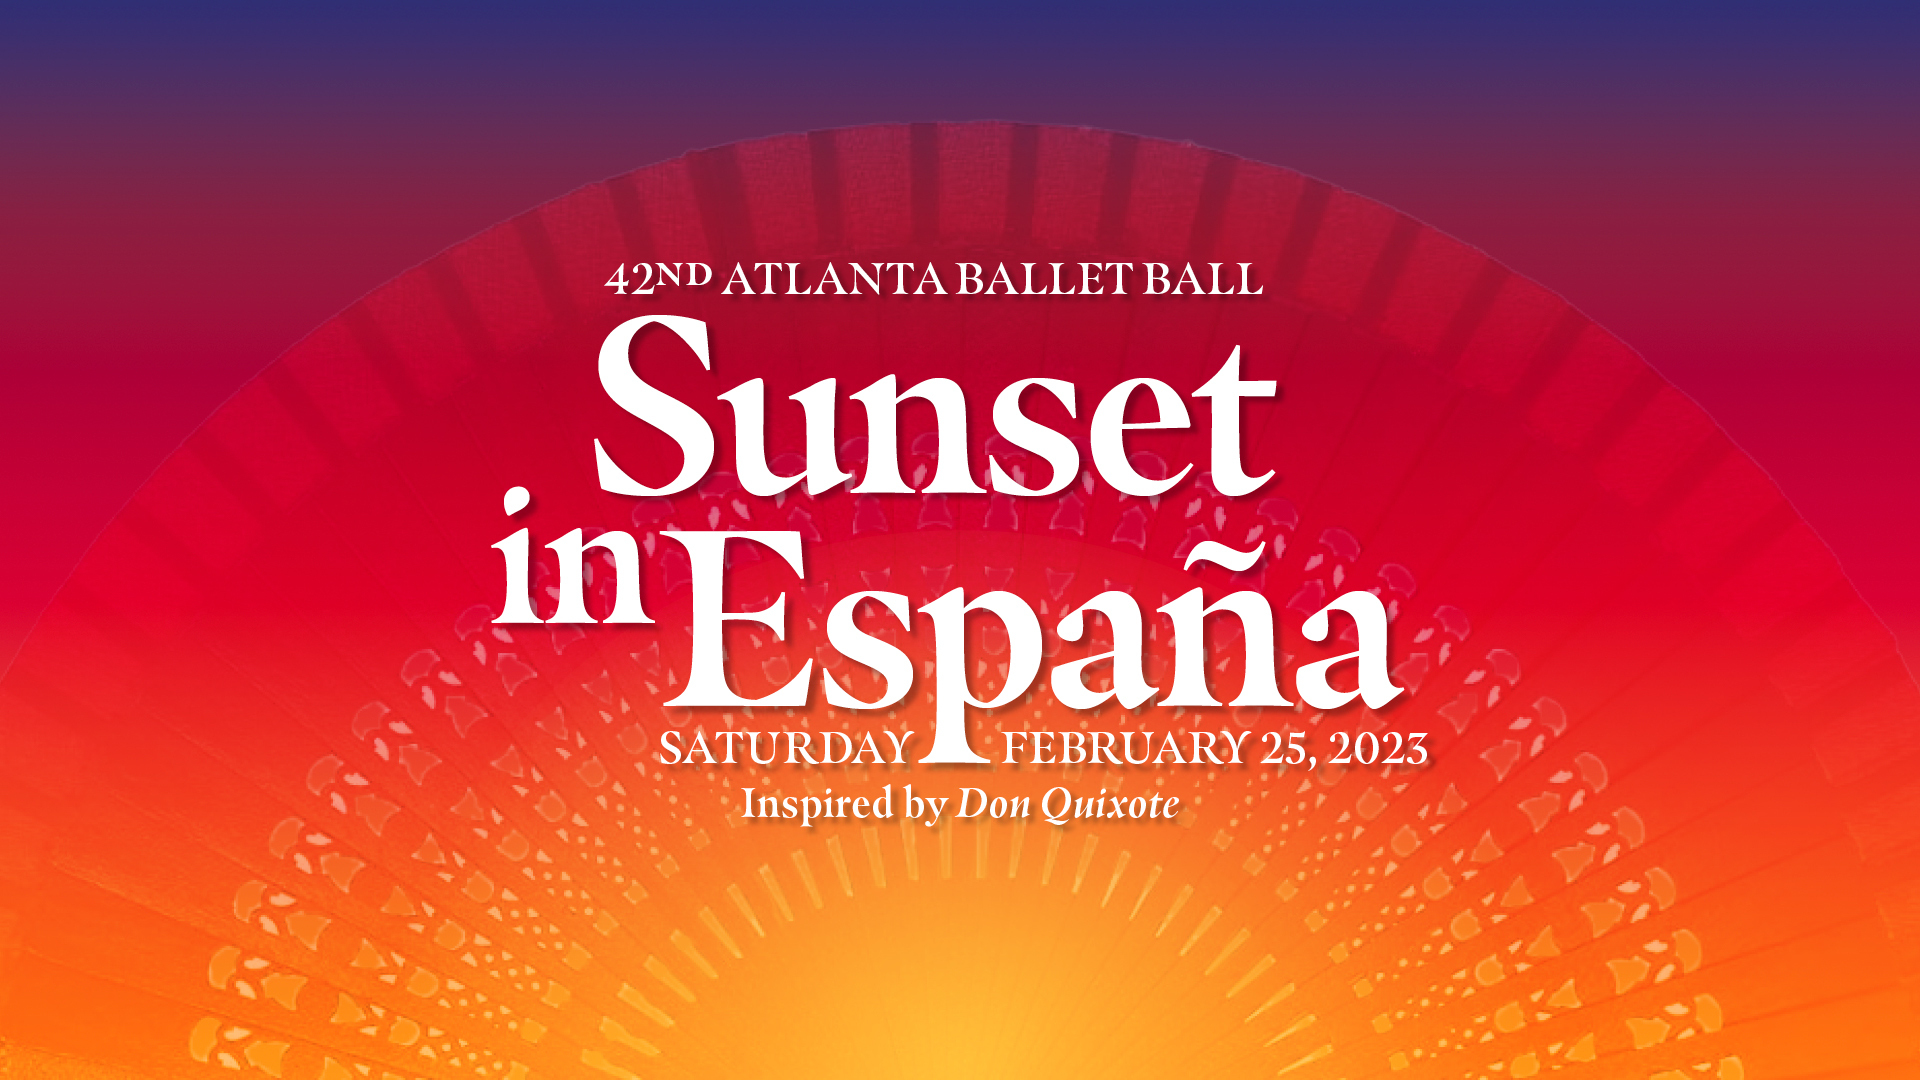 42nd Atlanta Ballet Ball: Sunset in España